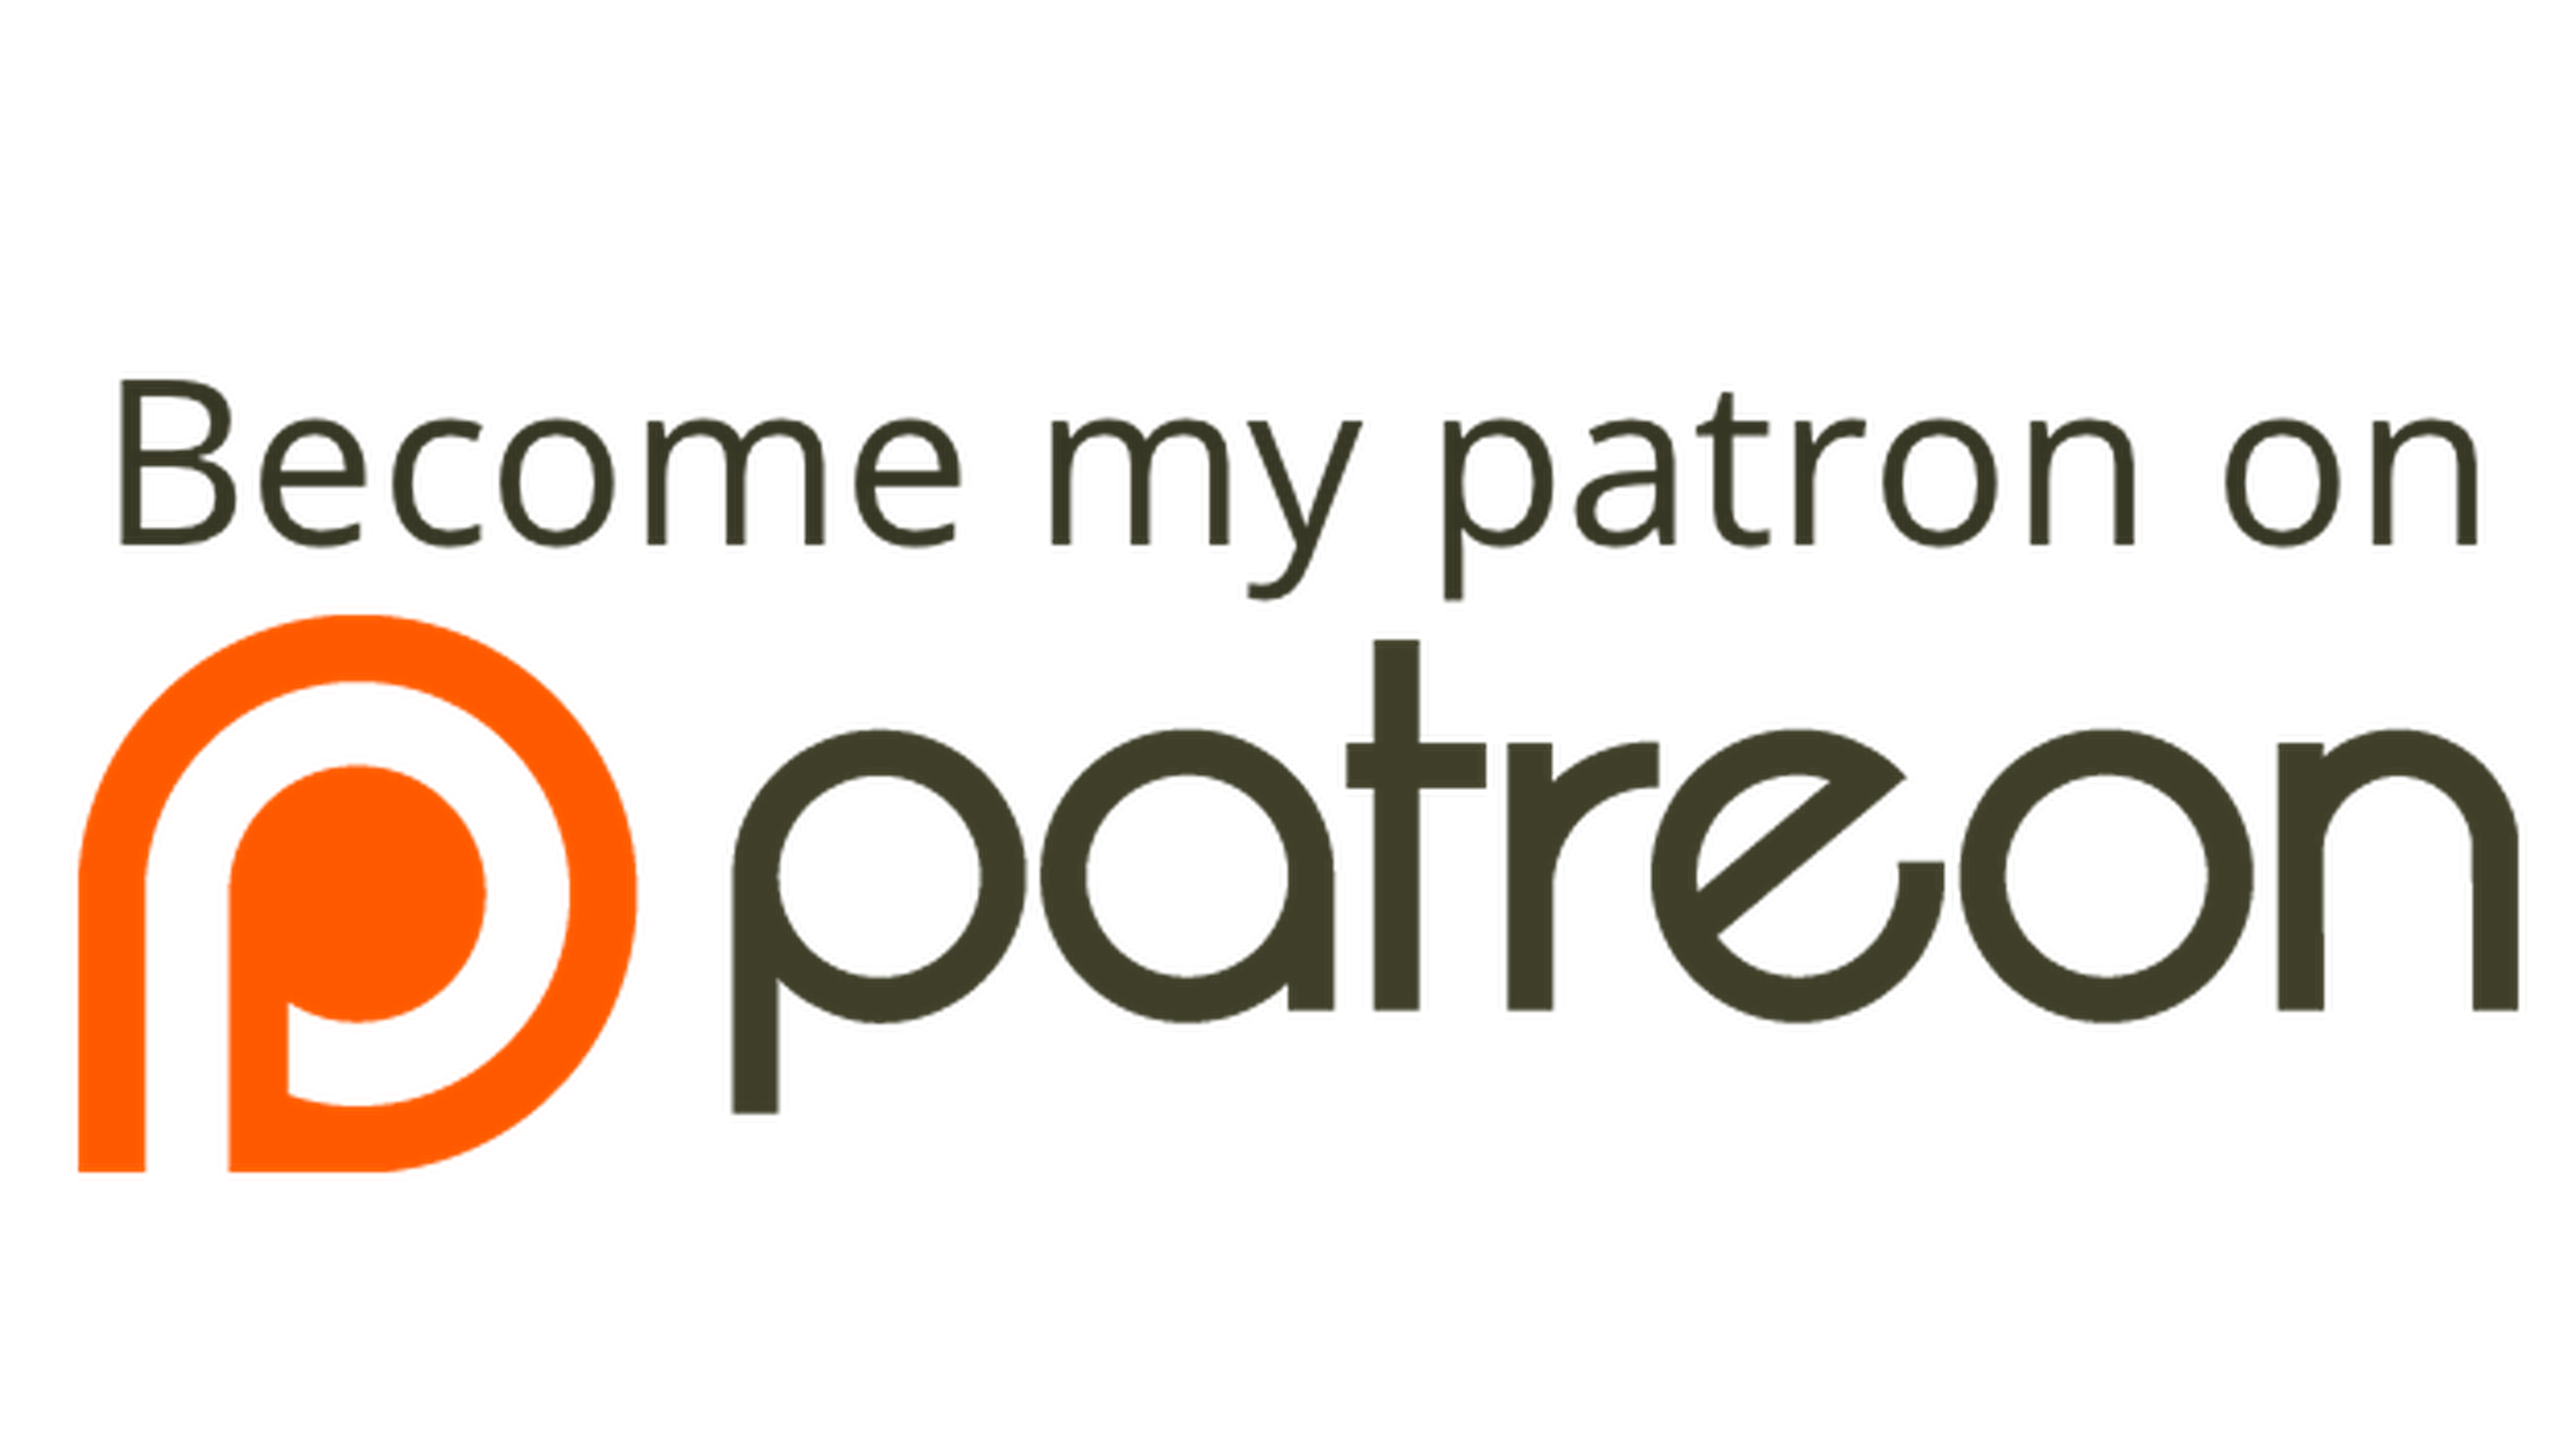 El portal de crowdfunding Patreon ha sido hackeado